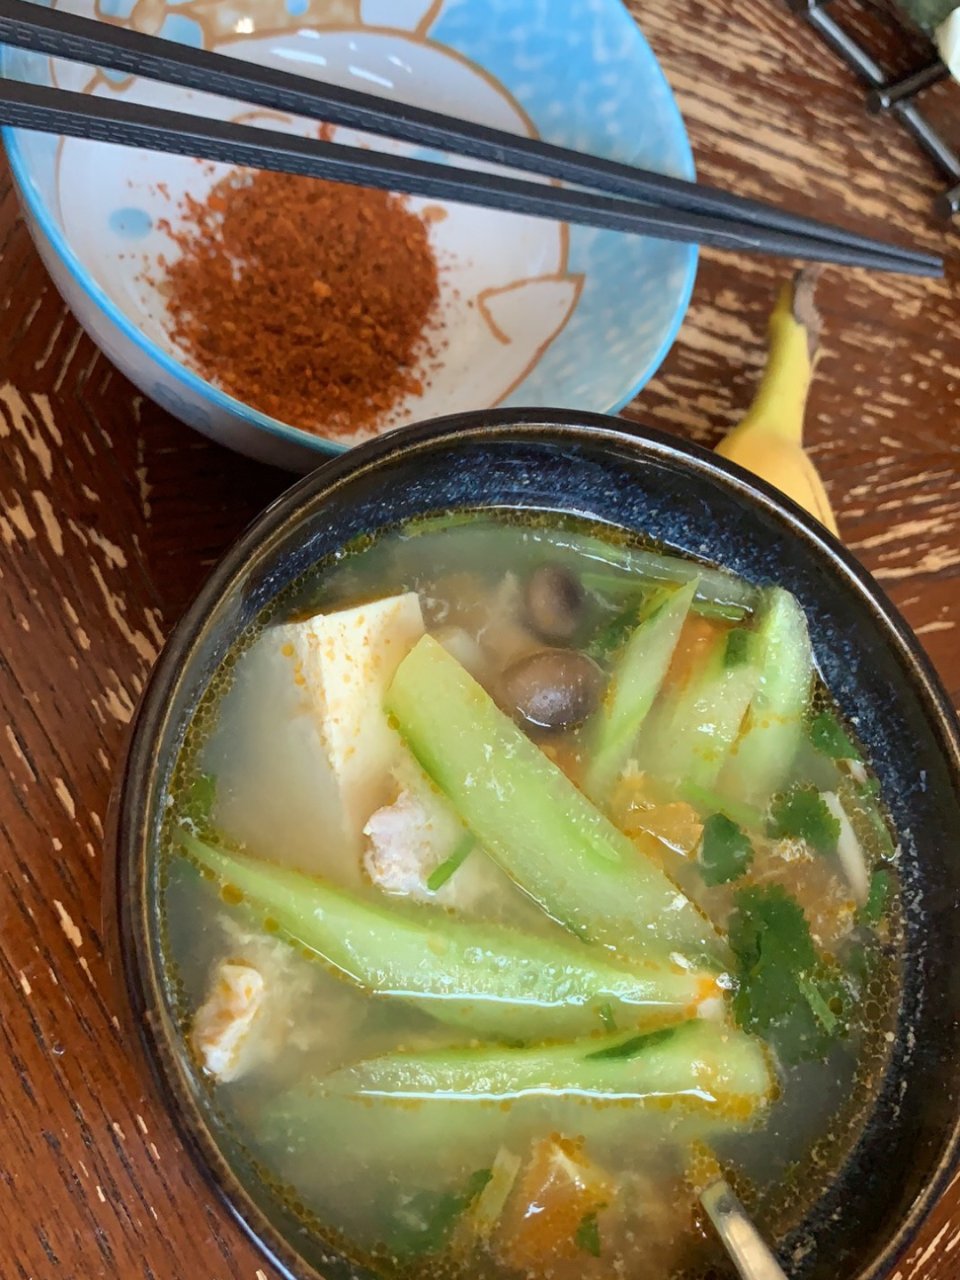 豆腐汤